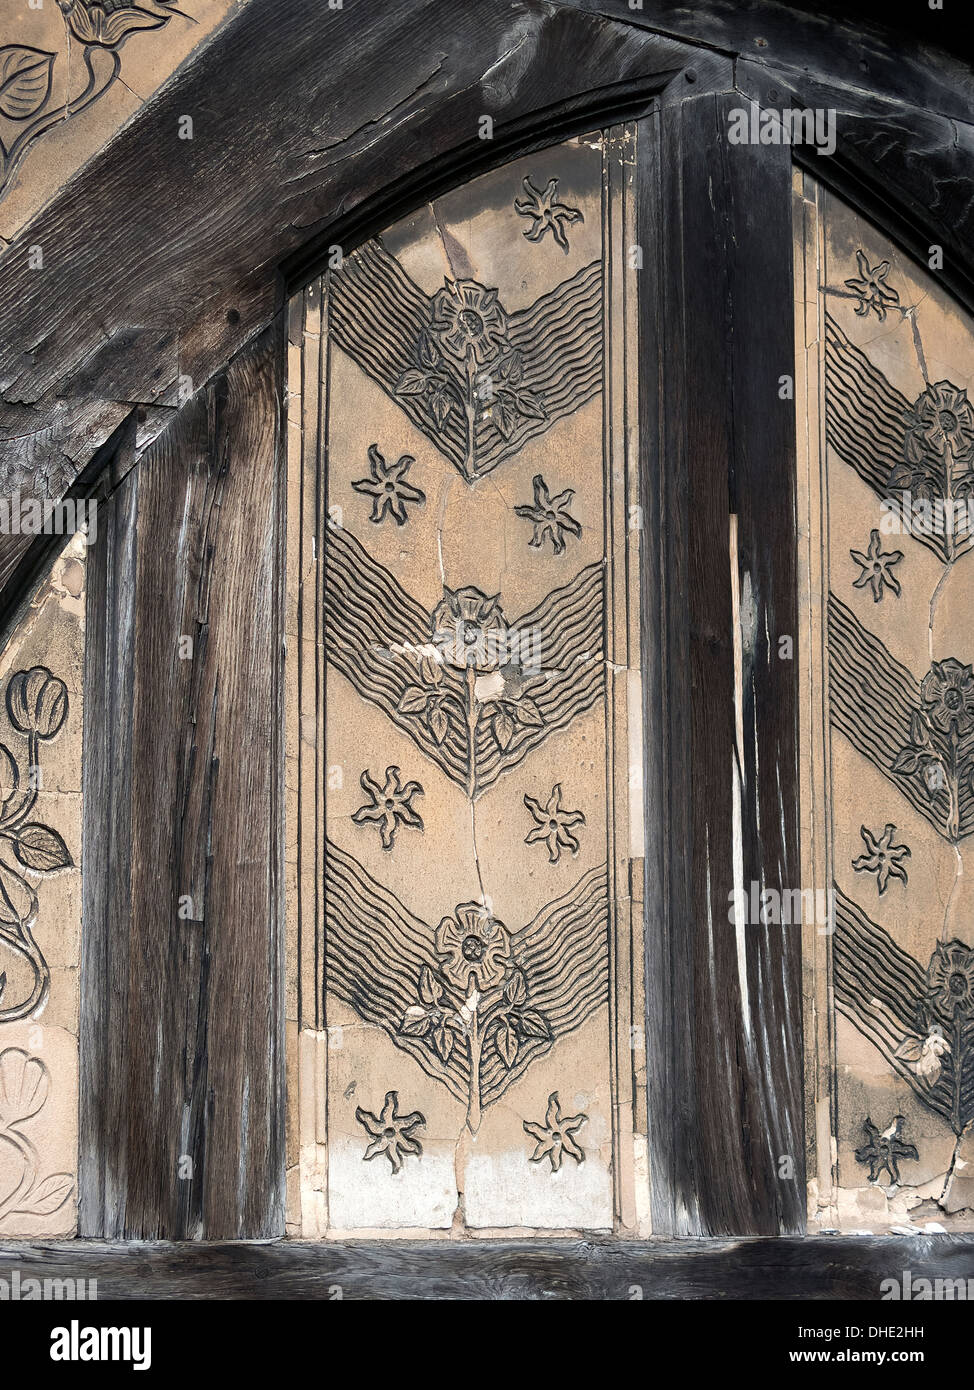 Alte geschnitzte gemusterten Verputz Rendern Dekoration zwischen Eichenbalken in Leicester Kathedrale Veranda, Leicester, England, UK. Stockfoto